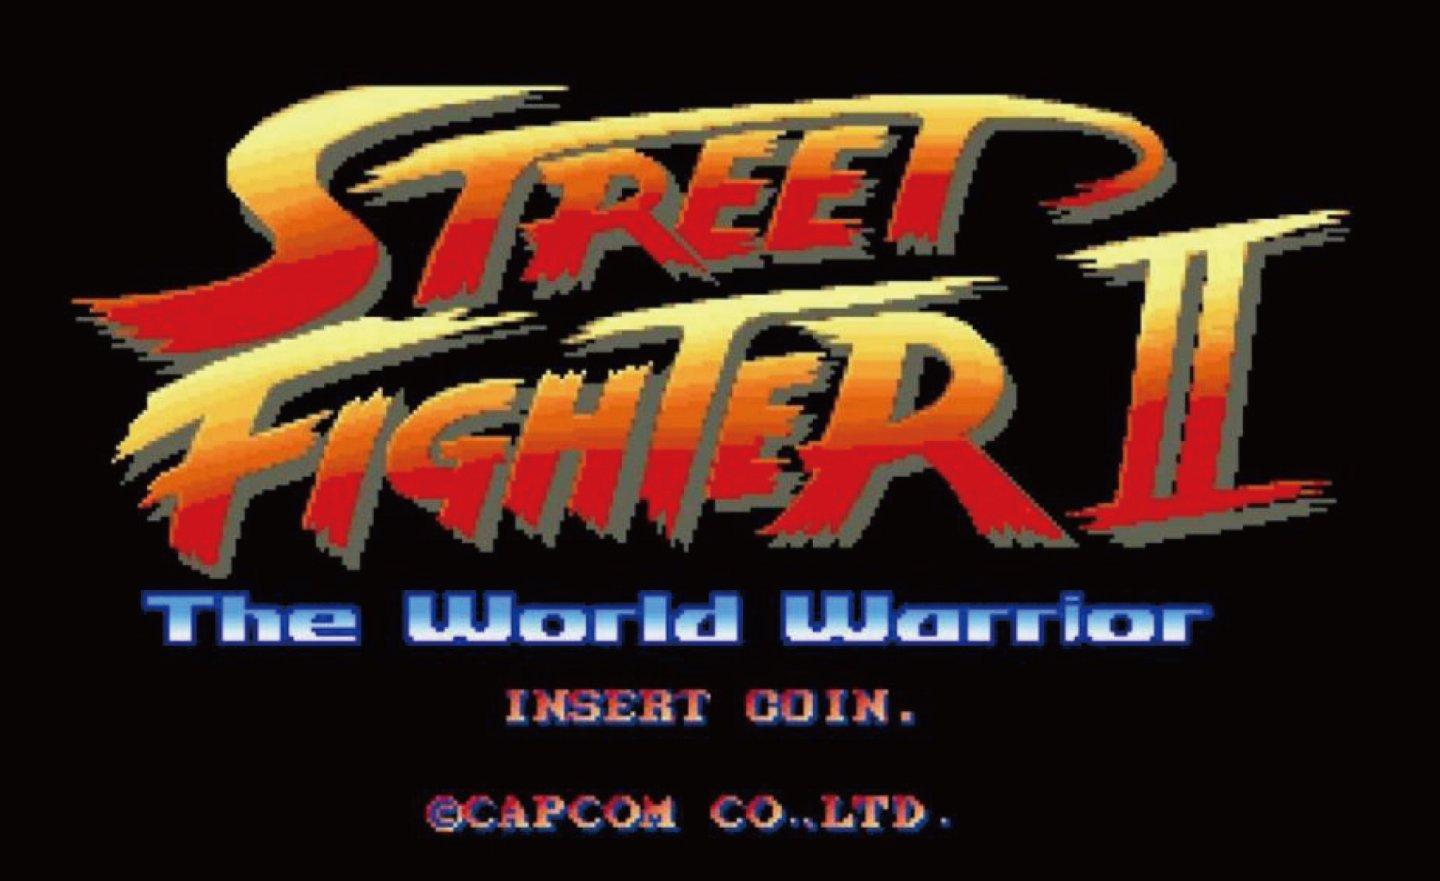 【限時免費】Capcom 卡普空經典格鬥遊戲《Street Fighter II 快打旋風 2》Steam 放送，2022 年 7 月 22 日上午 7:59 前領起來